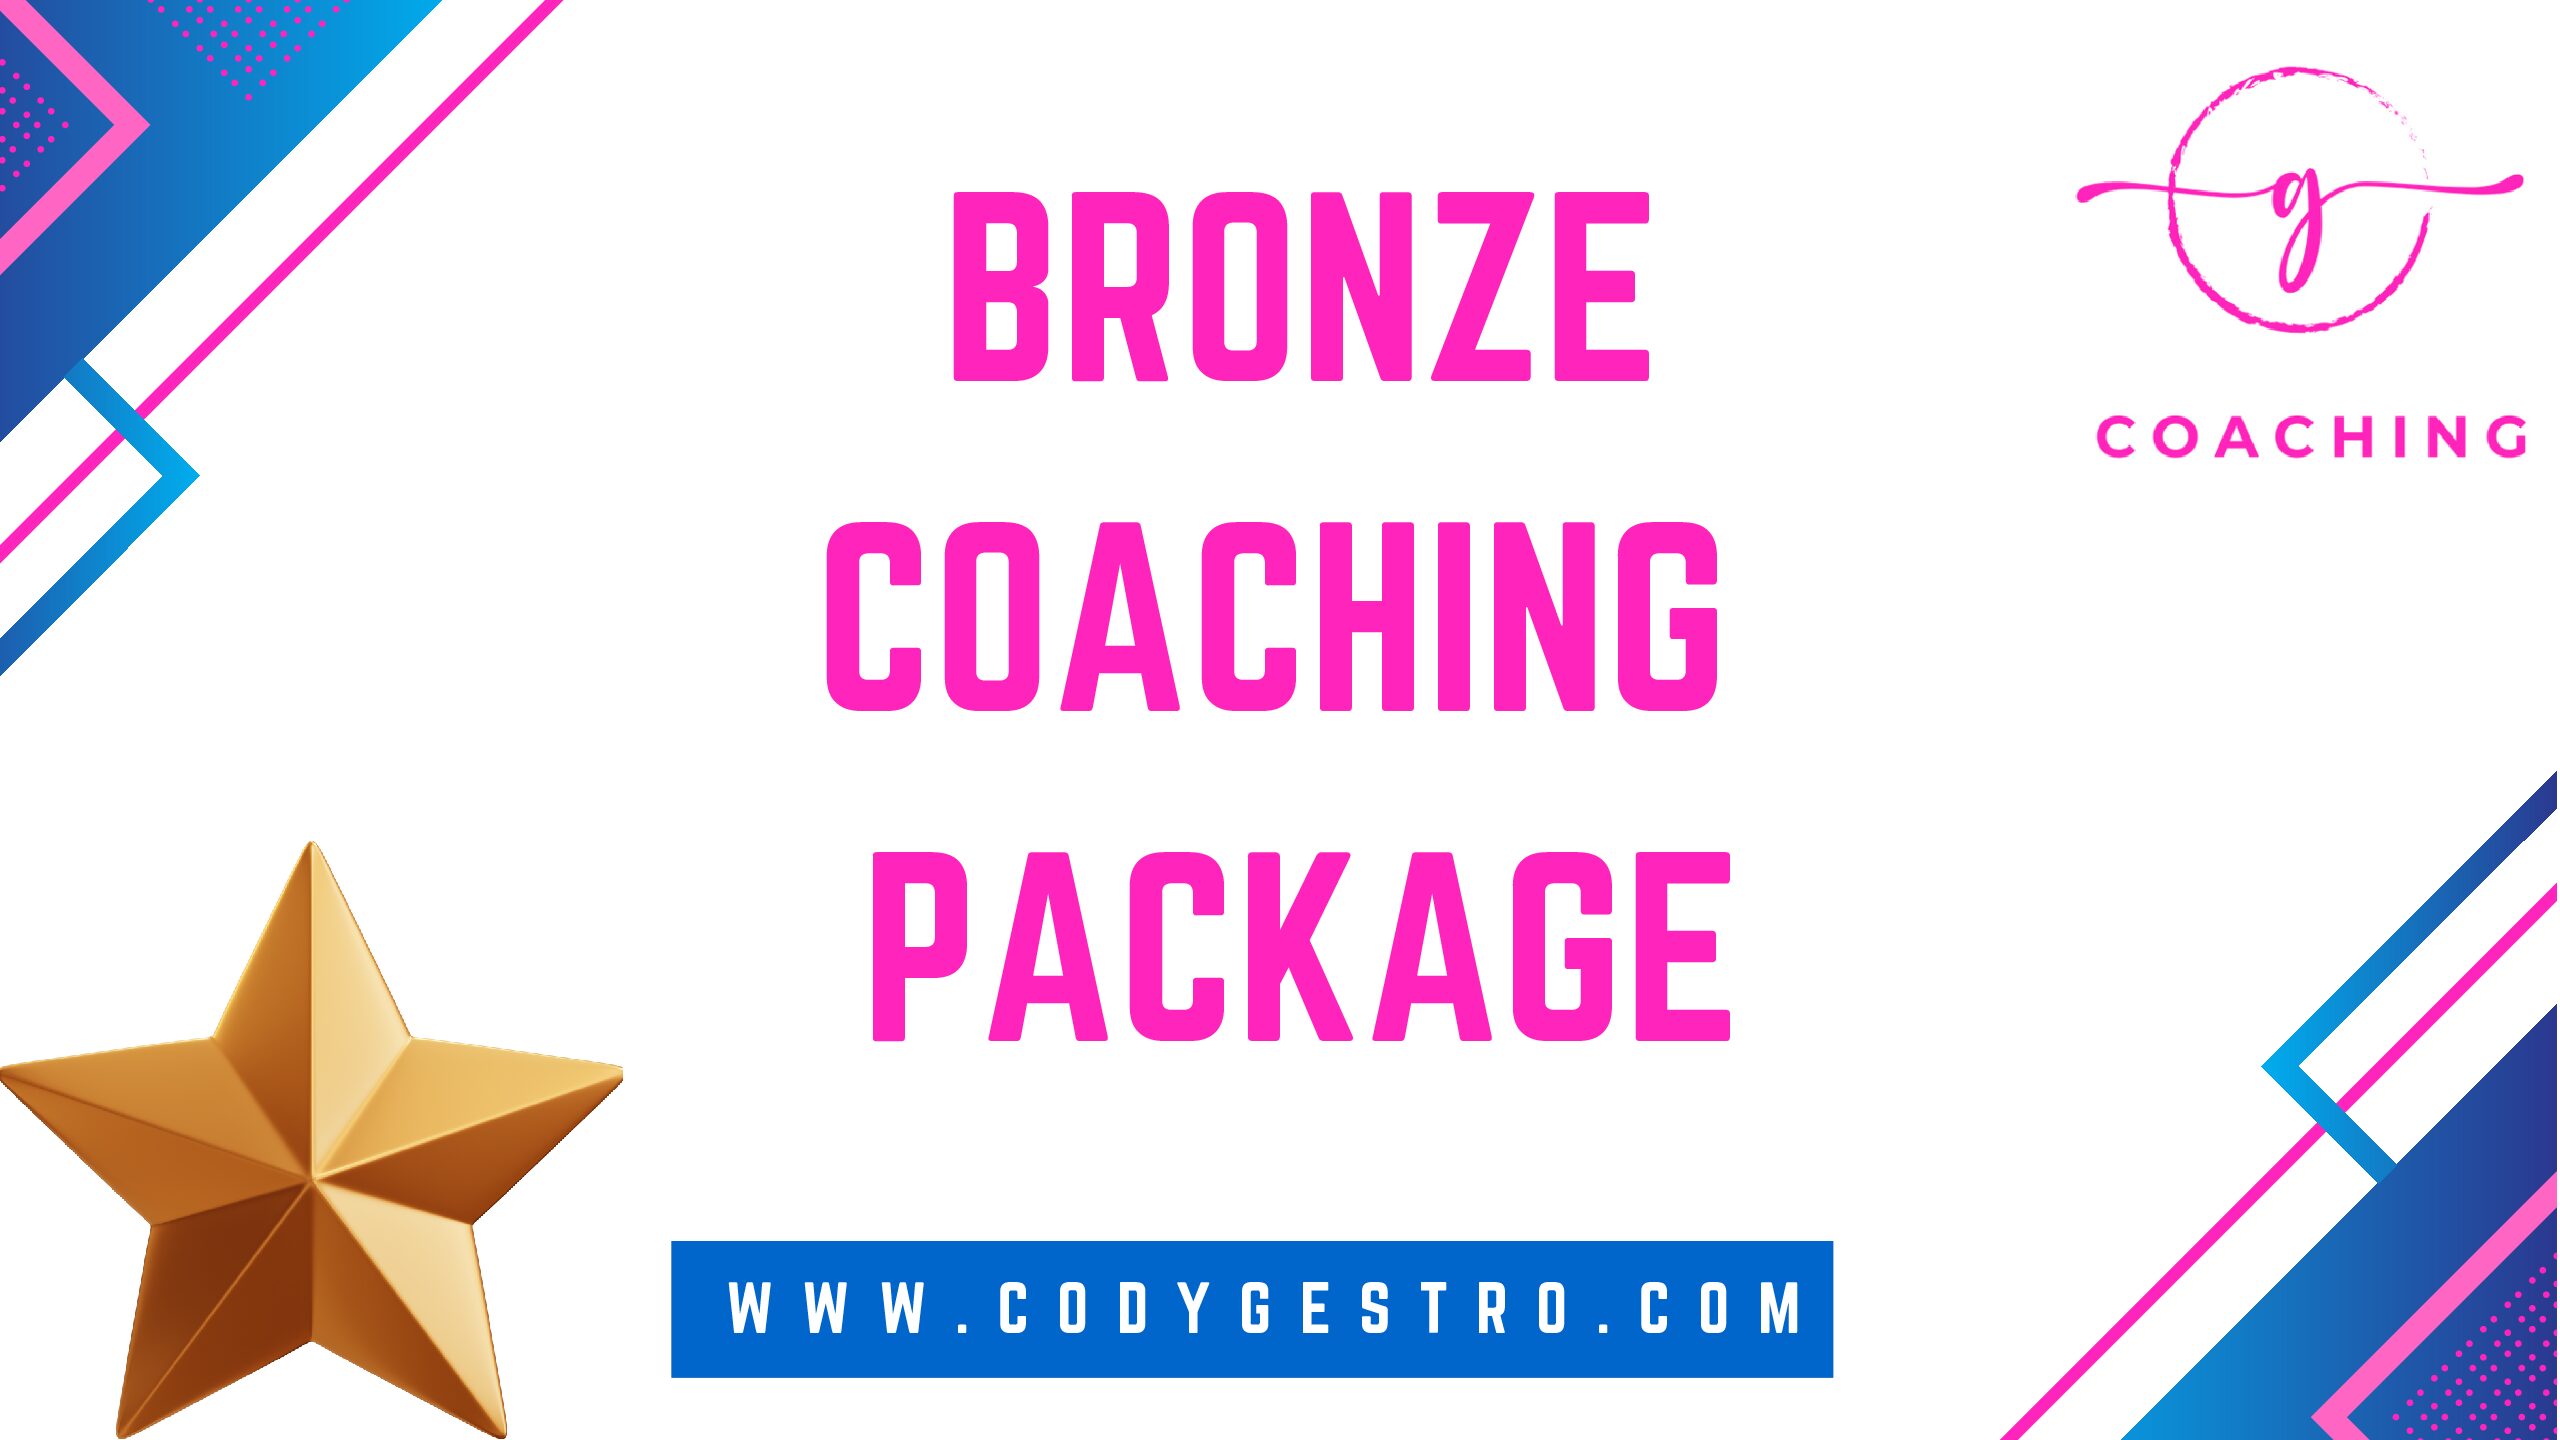 Bronze Coaching Package